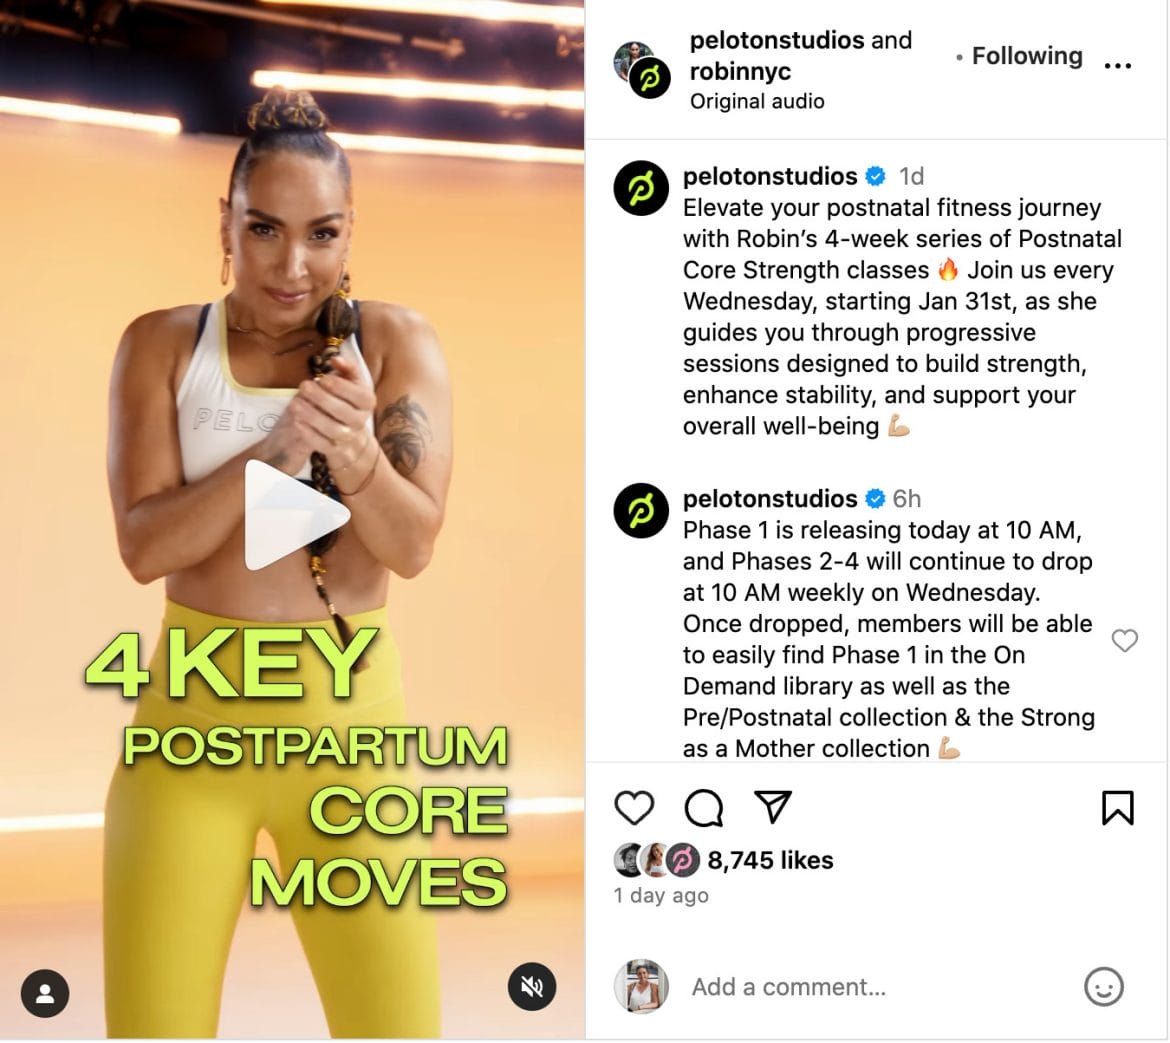 Peloton Instagram post announcing postnatal core strength series with Robin Arzón.